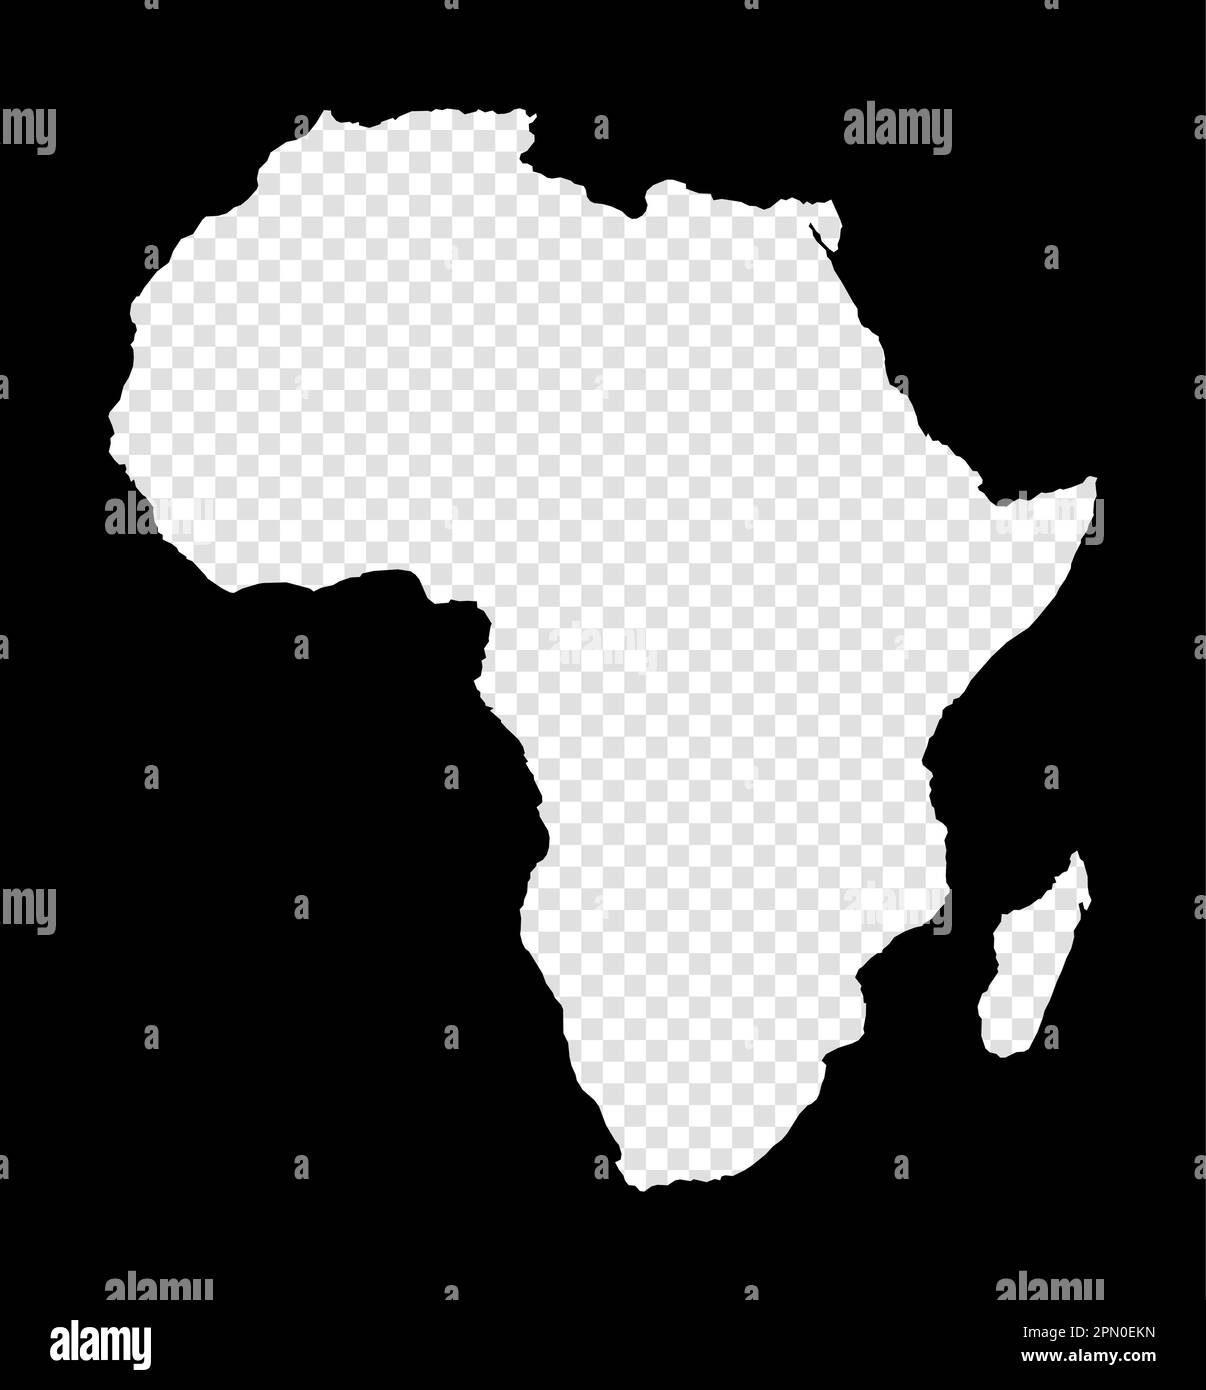 Stencil mapa de África Simple y mínimo mapa transparente de África Rectángulo negro con forma